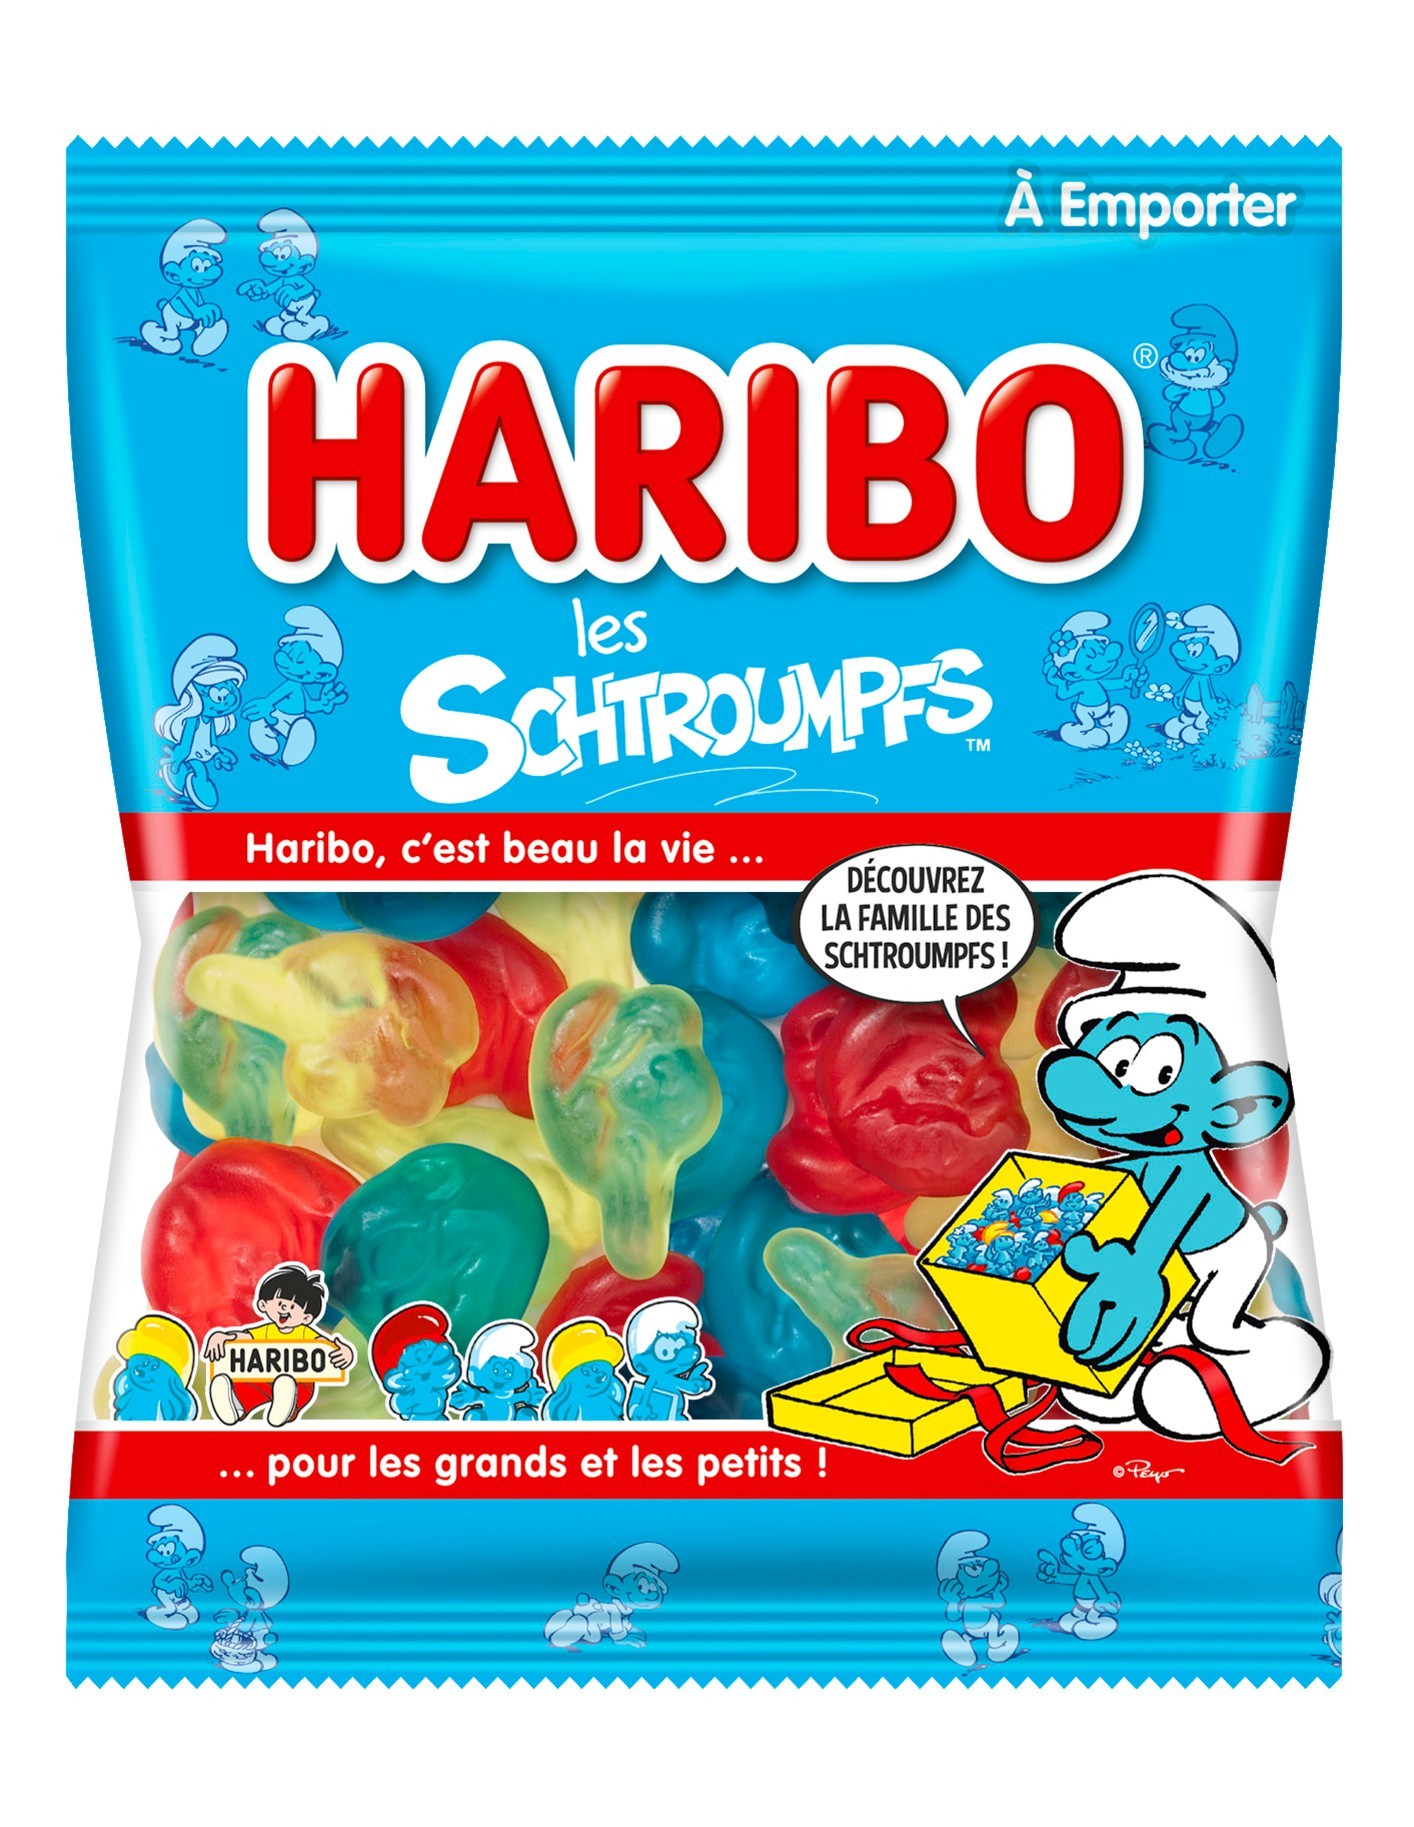 Schtroumpfs  Bonbon, Bonbon haribo, Image bonbon